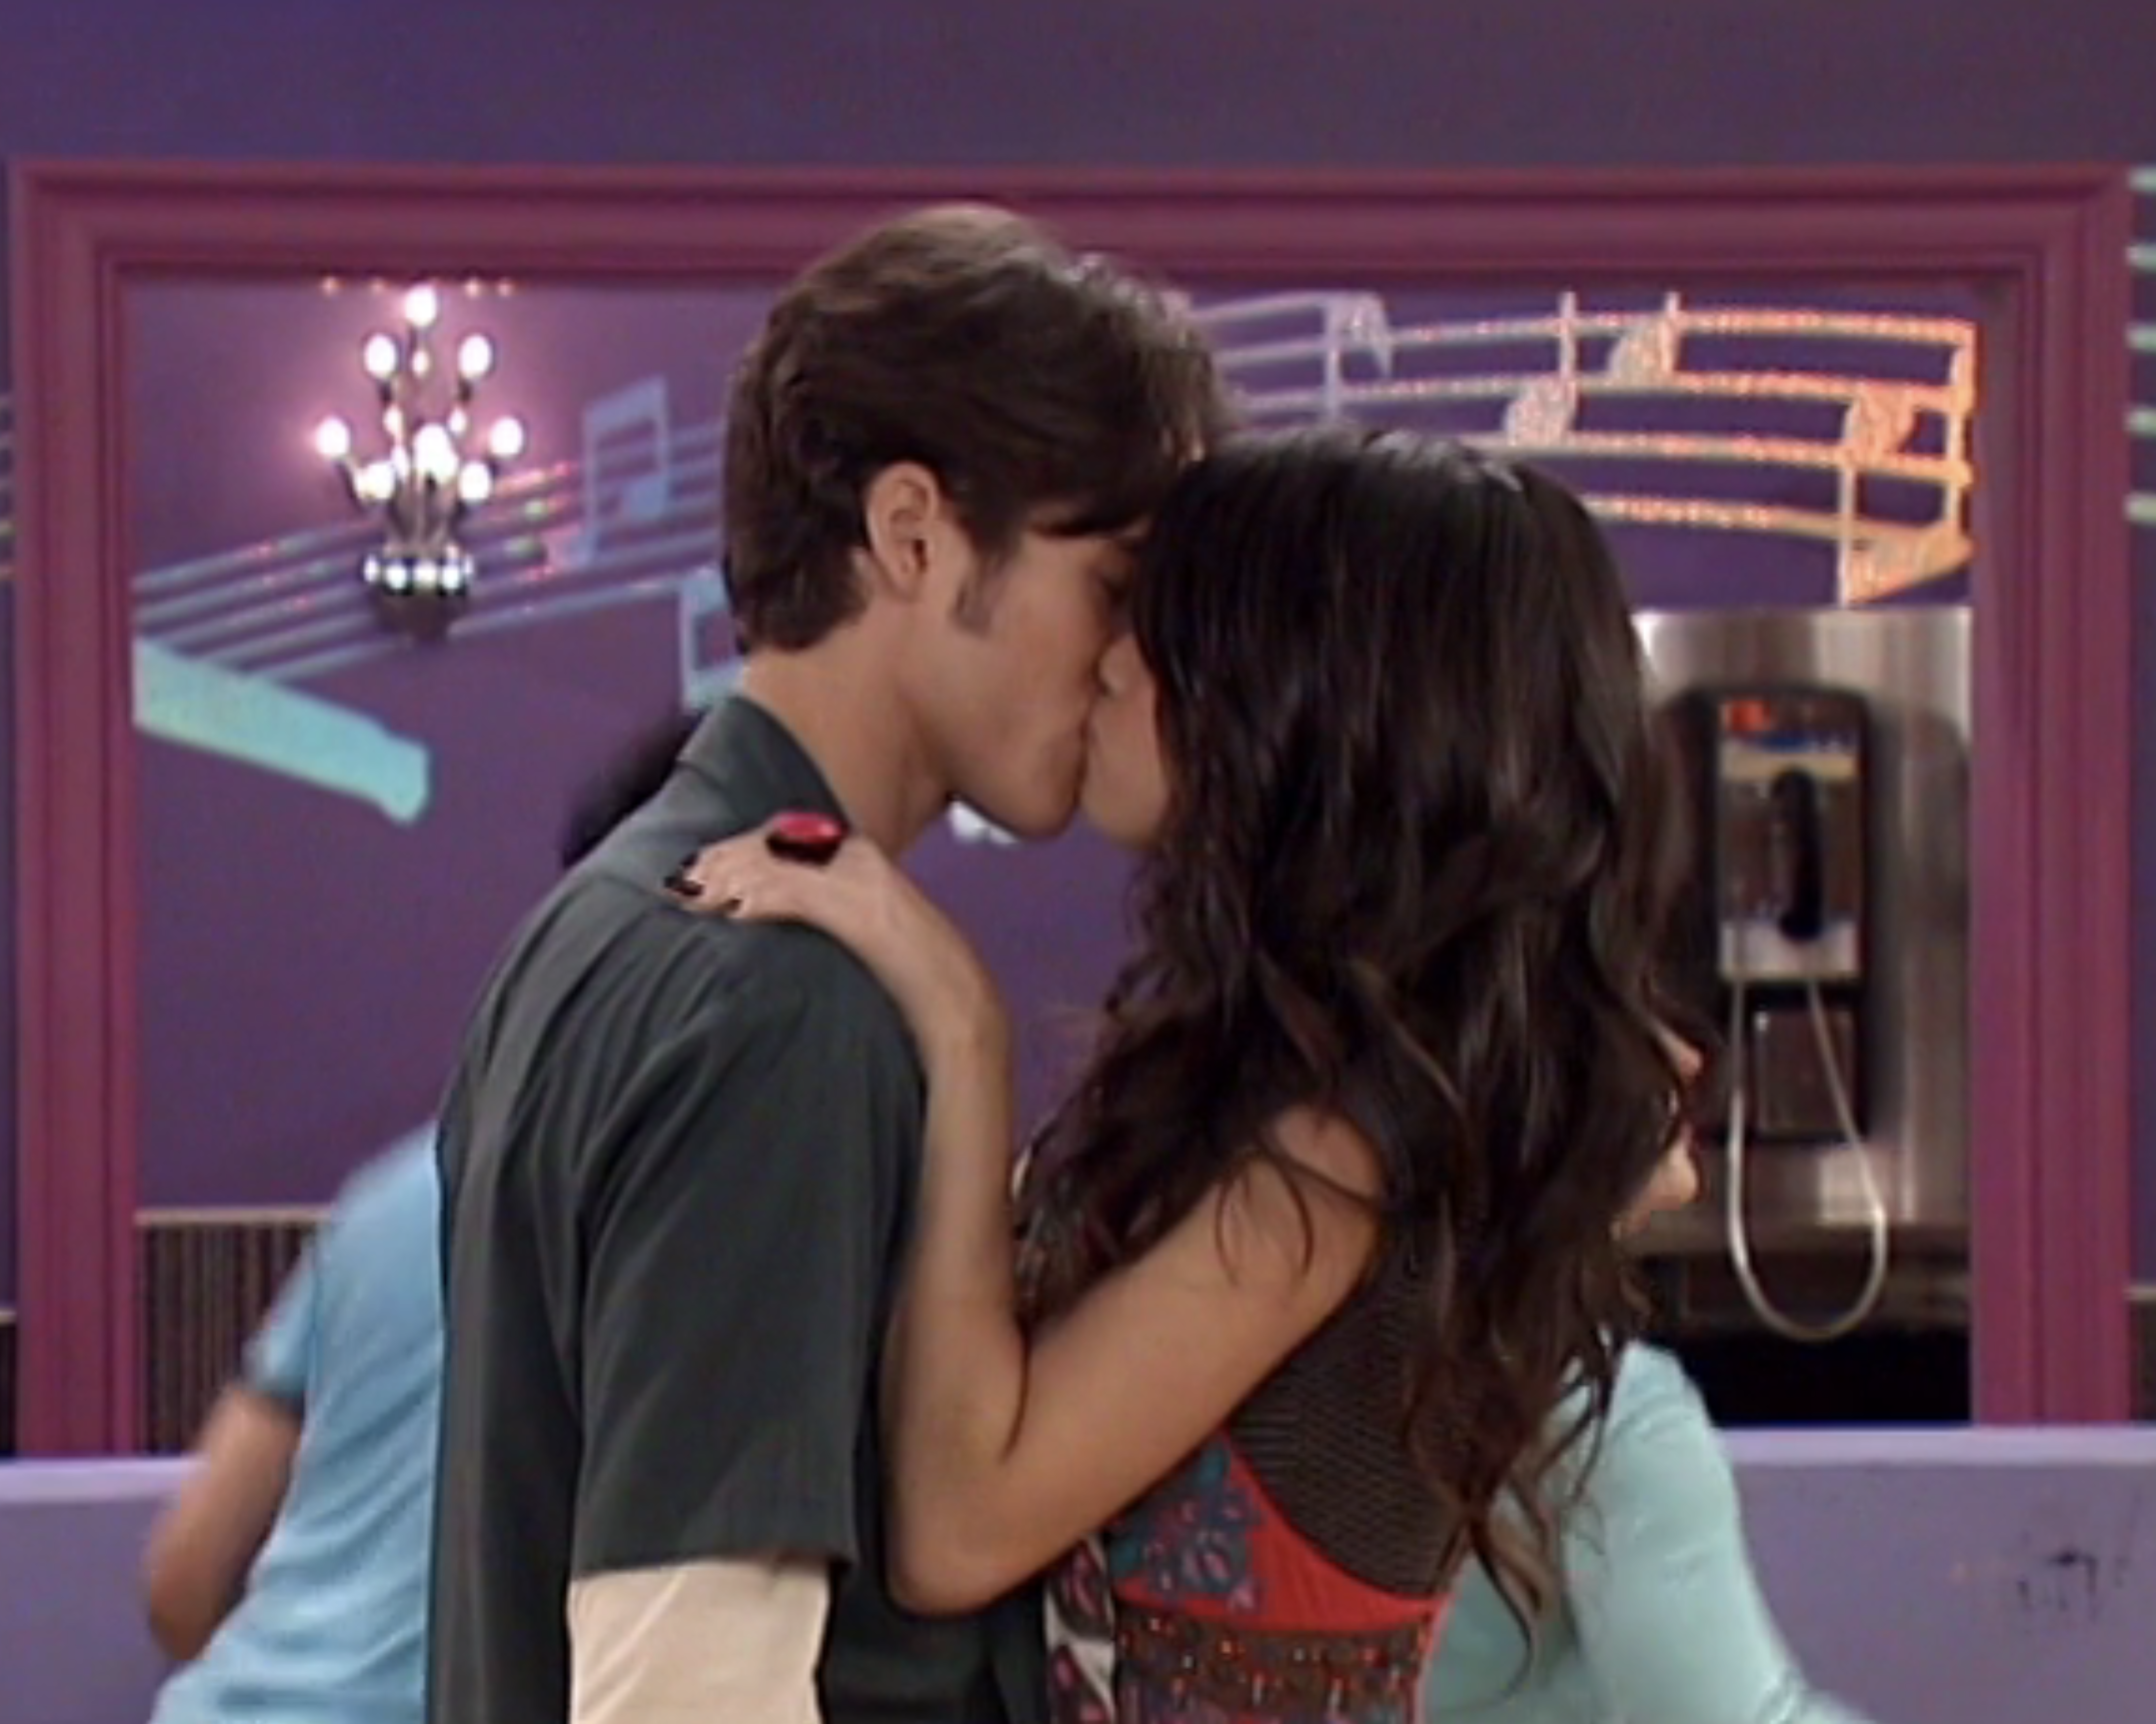 Dan and Selena kissing